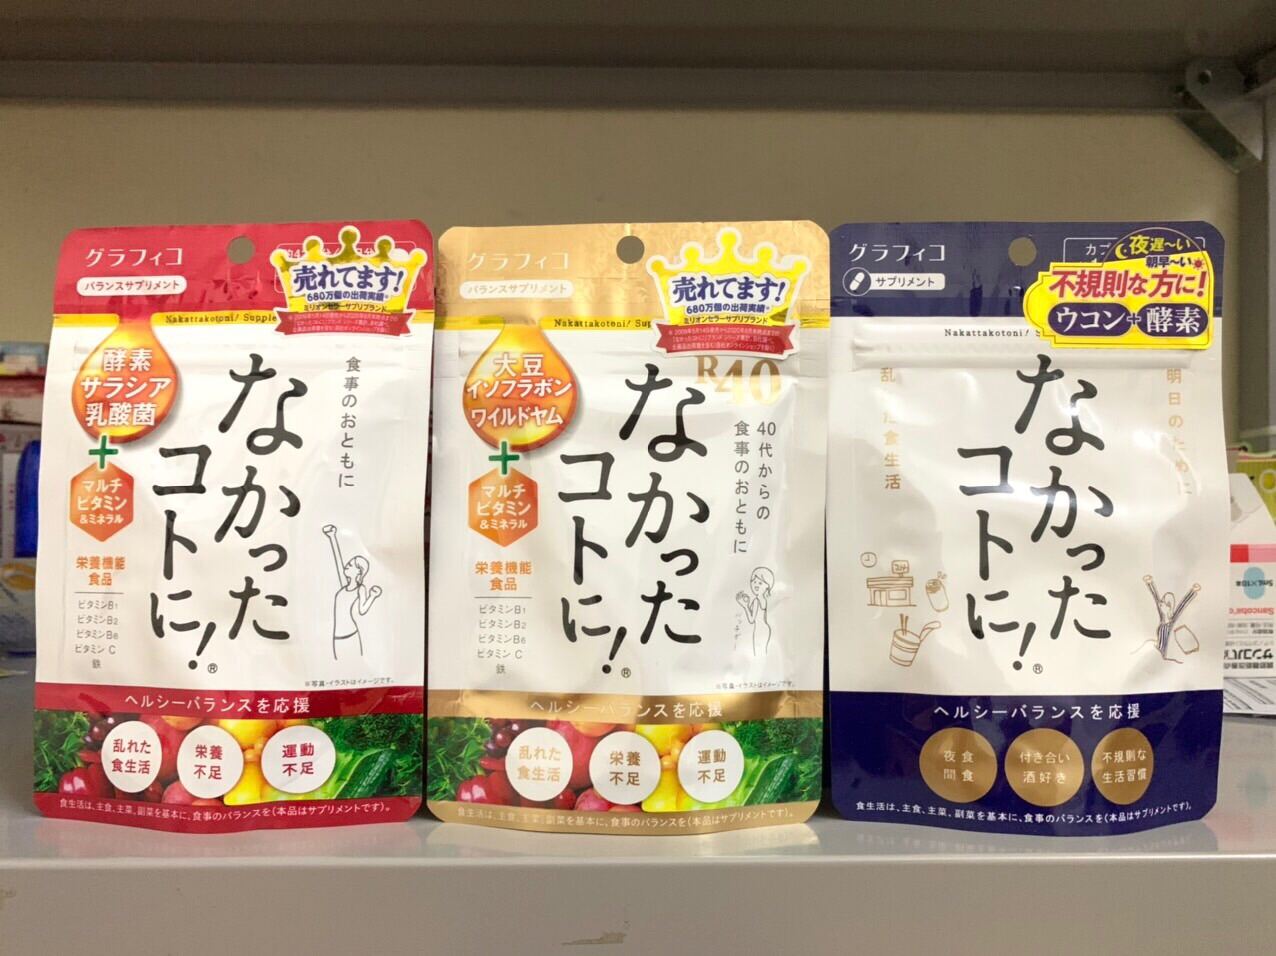 Viên uống Enzyme giảm cân ngày đêm R40 vàng Nakatta kotoni Nhật Bản